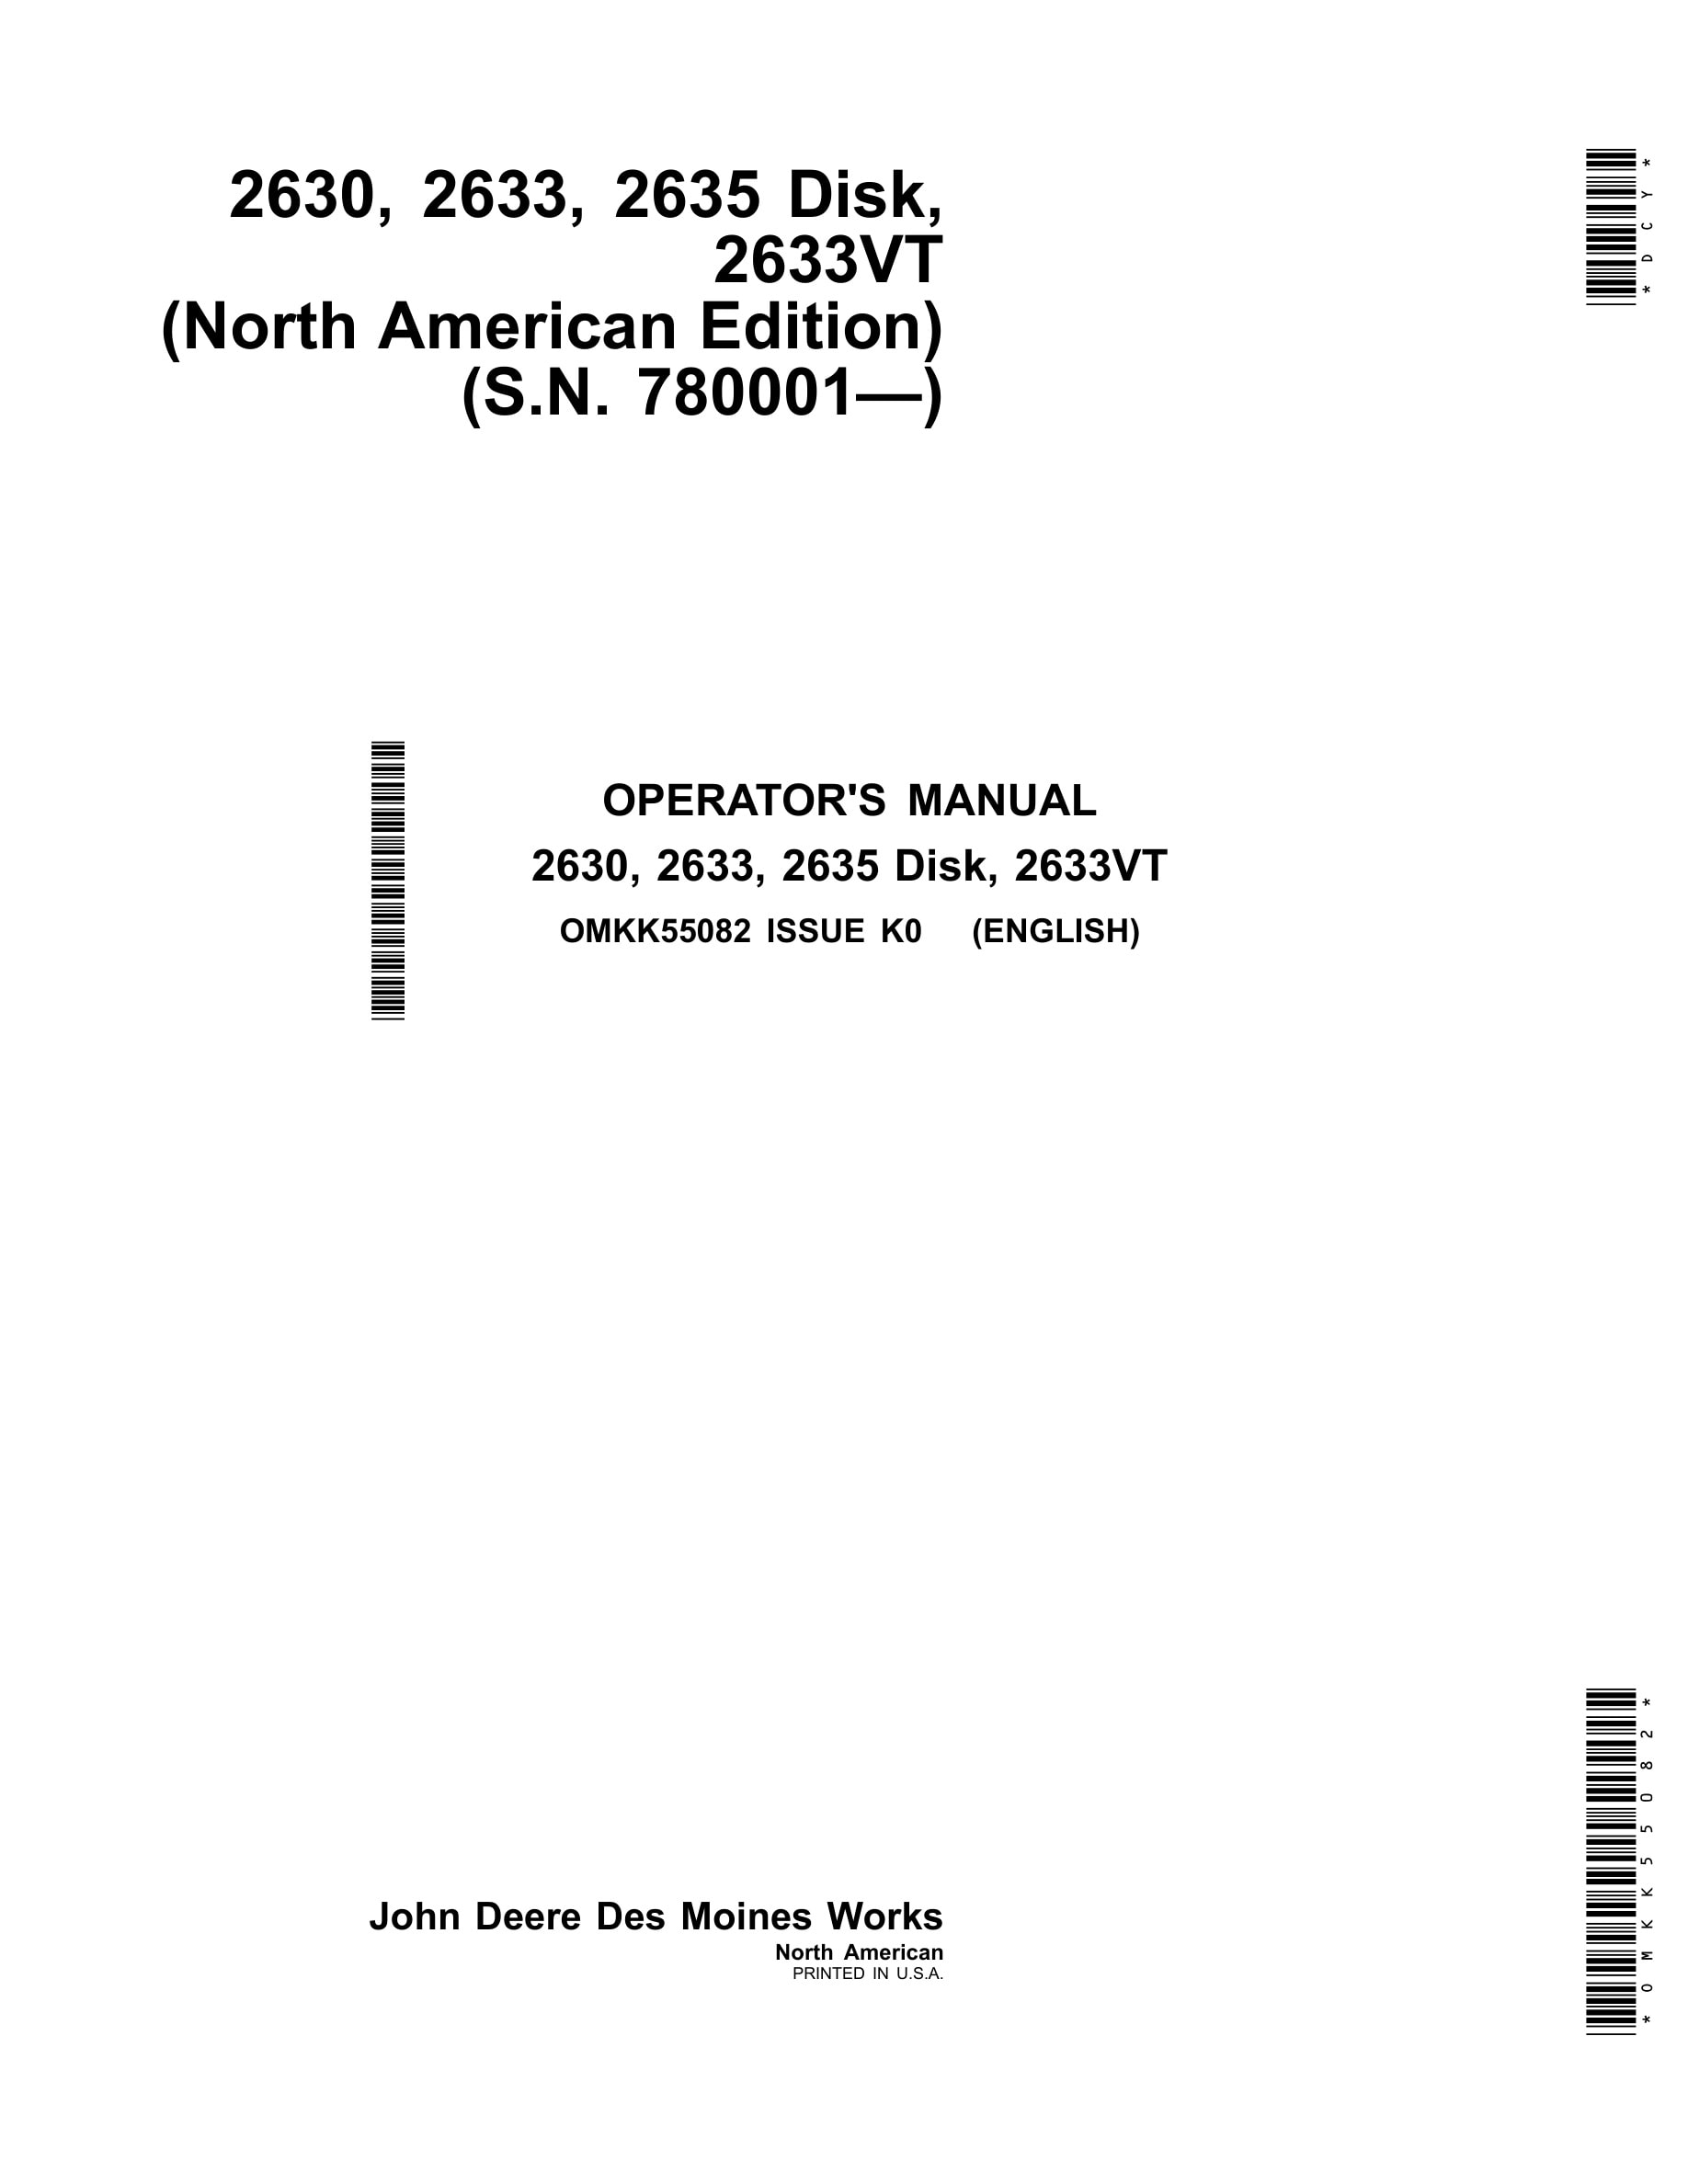 John Deere 2630, 2633, 2635, 2633VT Disk Operator Manual OMKK55082-1